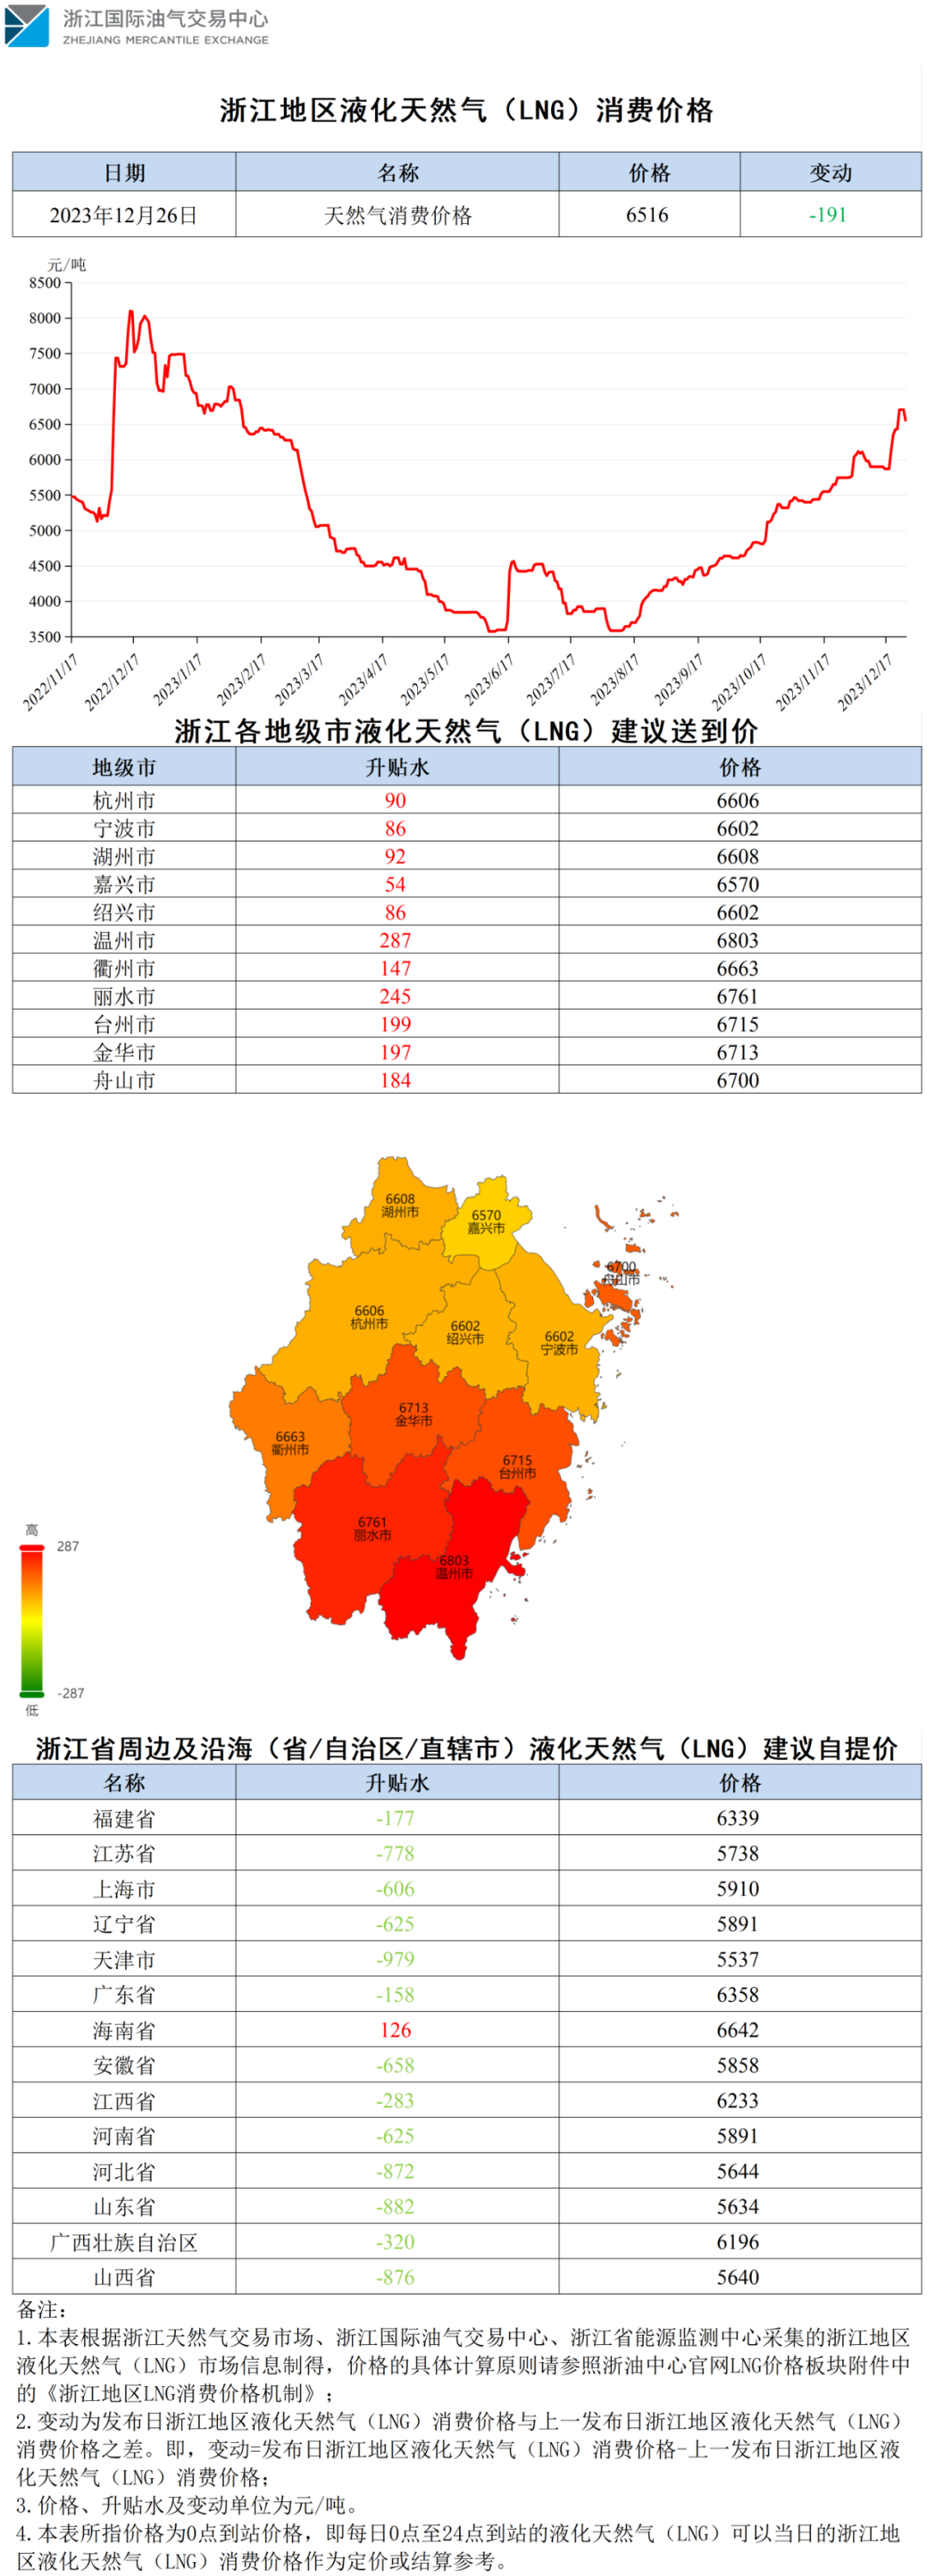 【价格指数】浙江地区液化天然气（LNG）消费价格